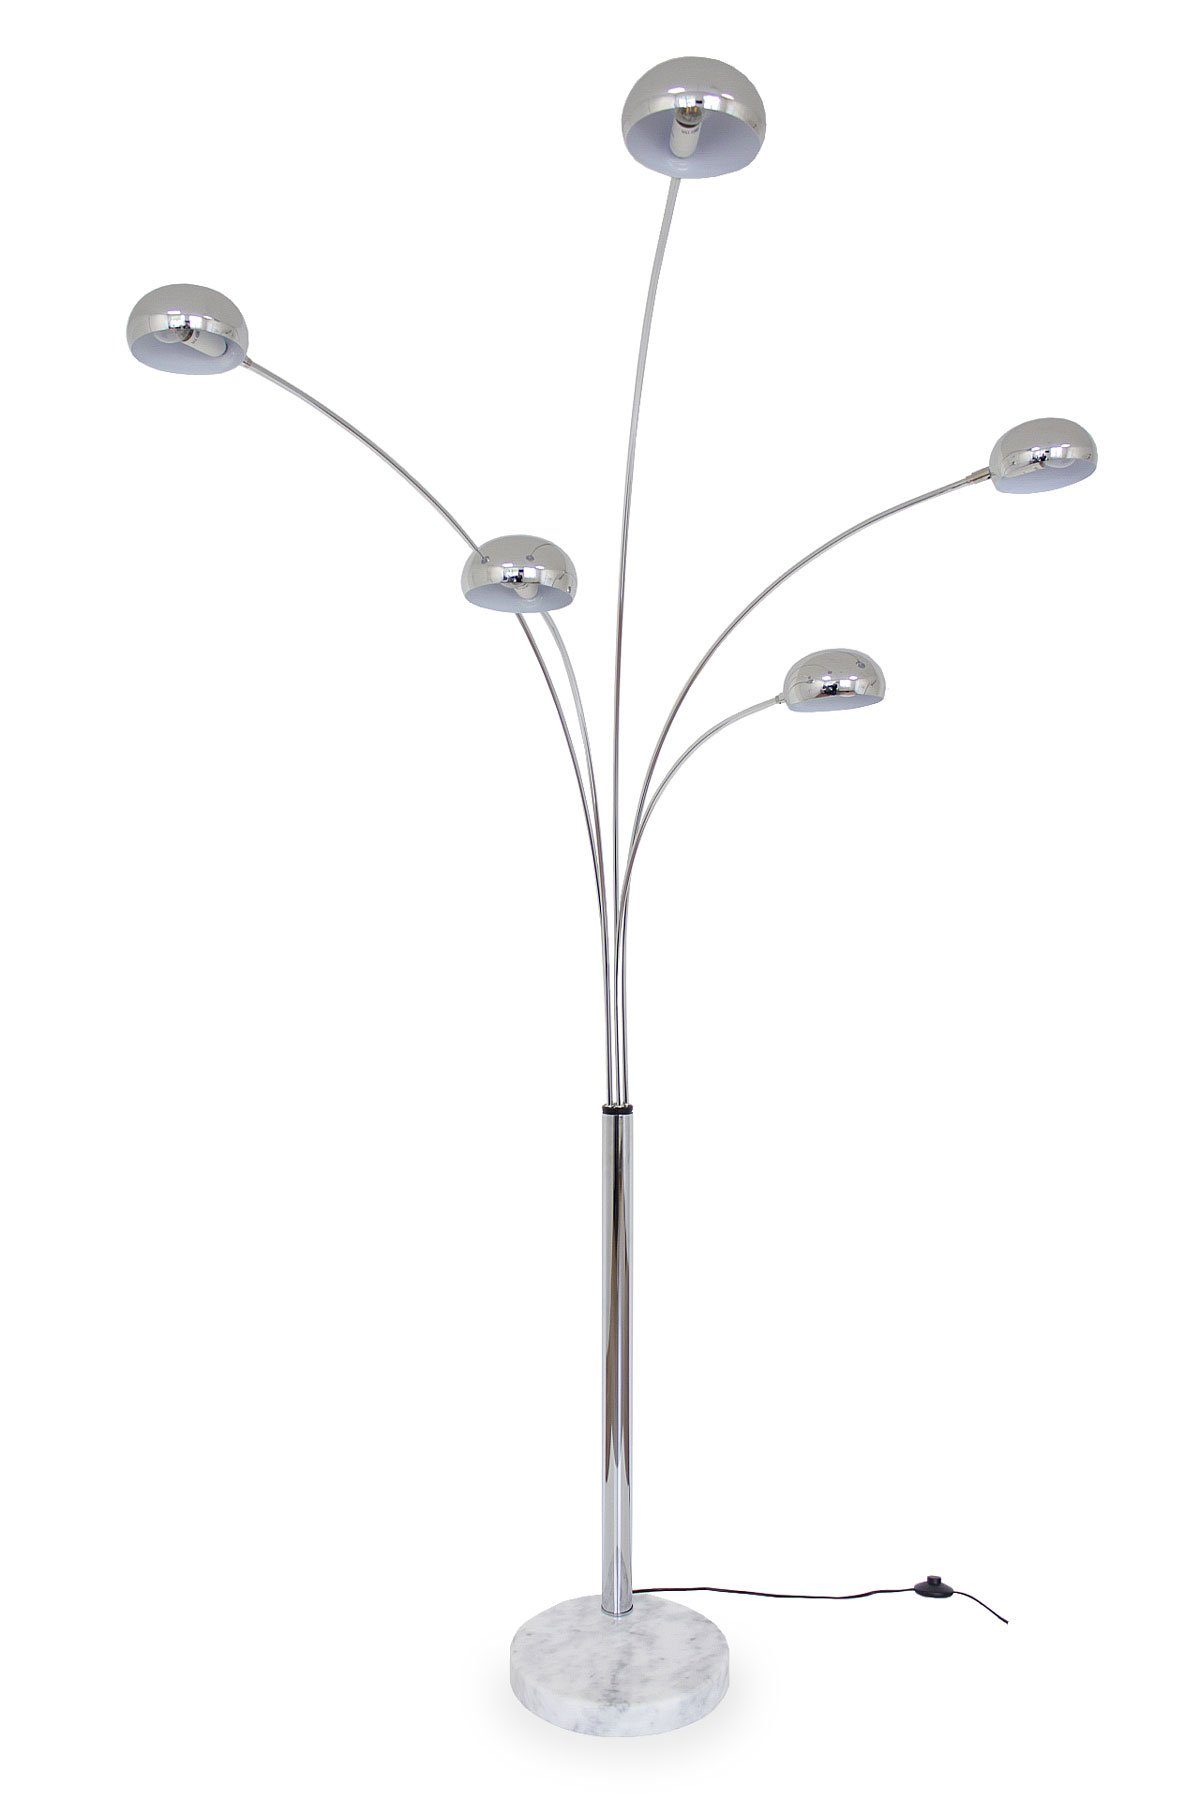 Kiom Stehlampe Bogenleuchte Narok XL 5-armig chrom + Marmor weiß, Leuchtenarme auffächerbar, Leuchtmittel nicht inklusive, Leuchtmittel abhängig